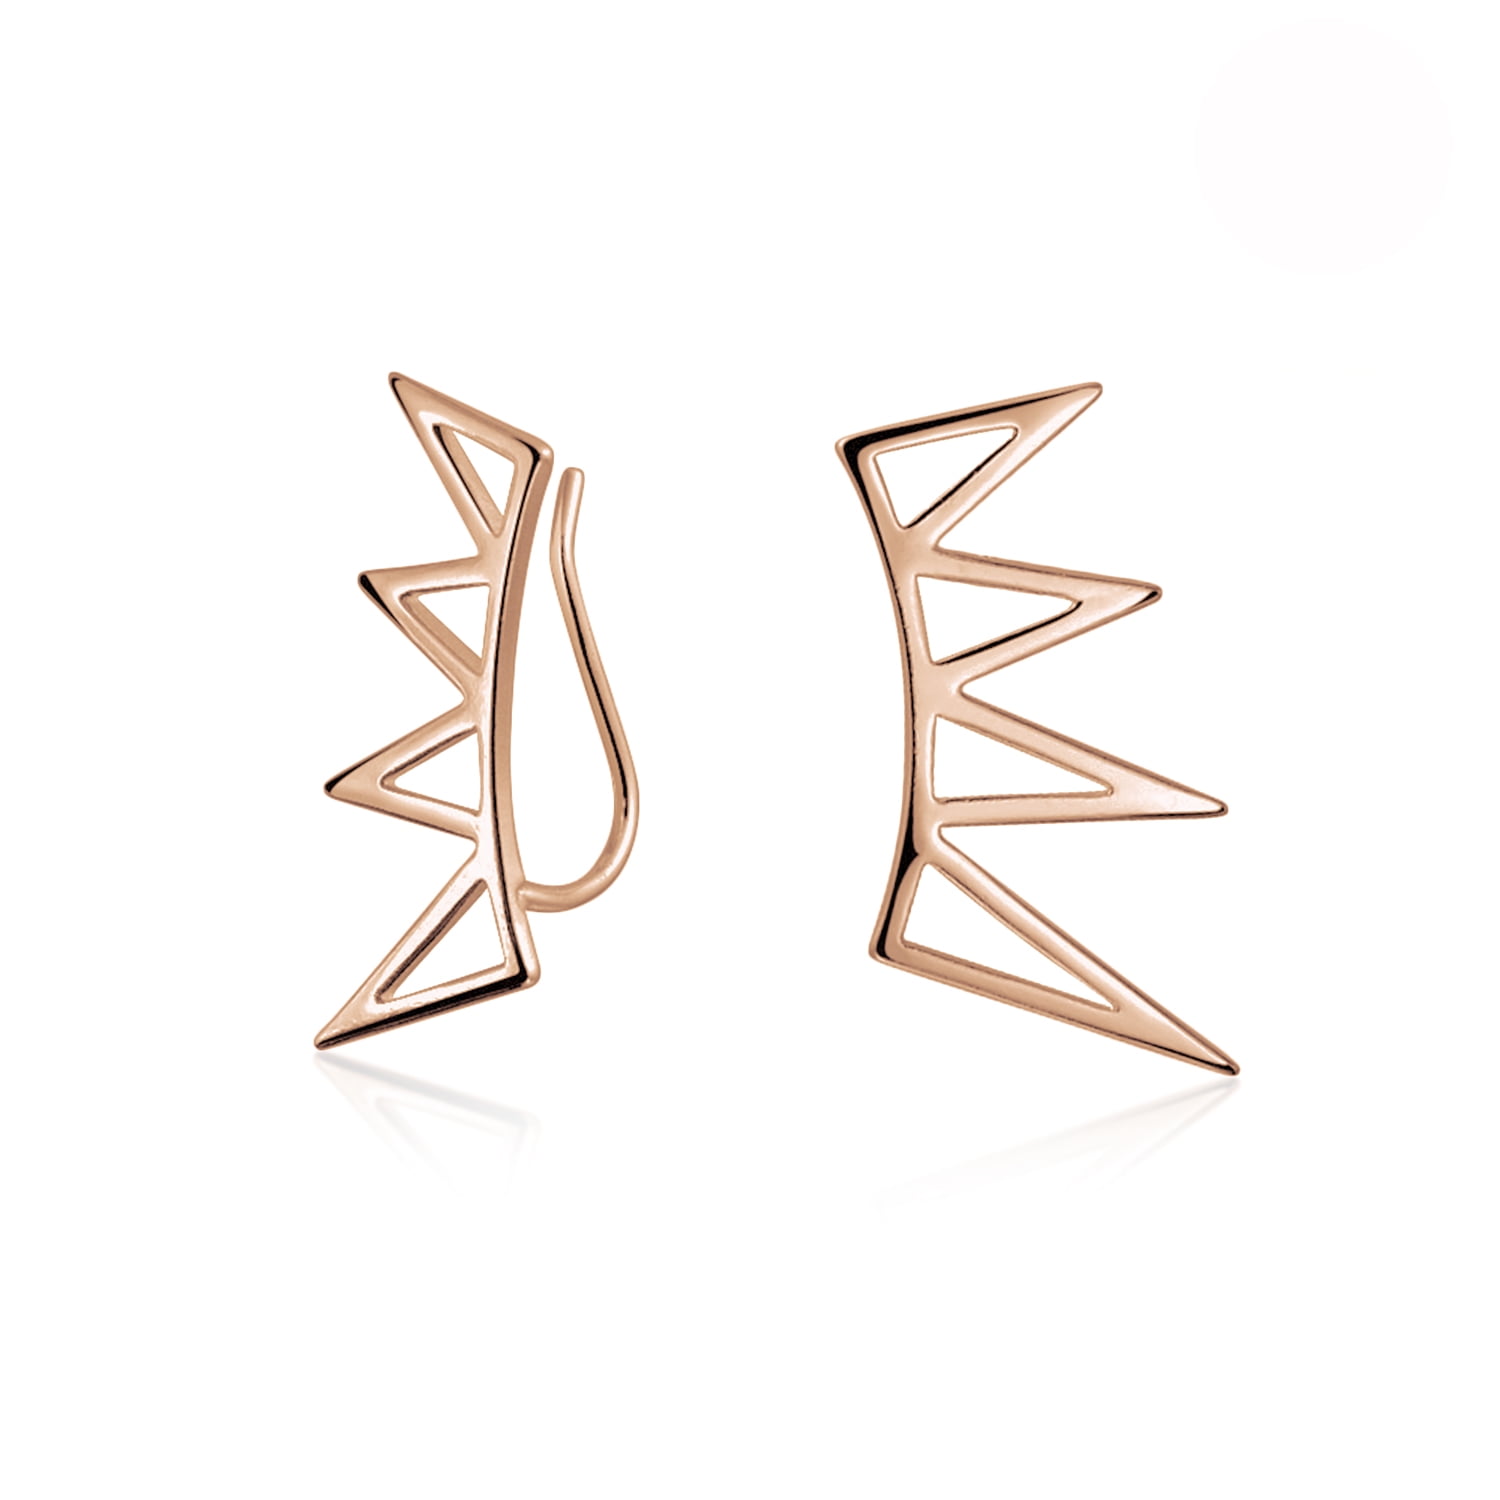 Pull Through Open Hoop Pyramid Earrings Minimalist Geometric Design Spike Huggie Hoop Earrings in Sterling Silver